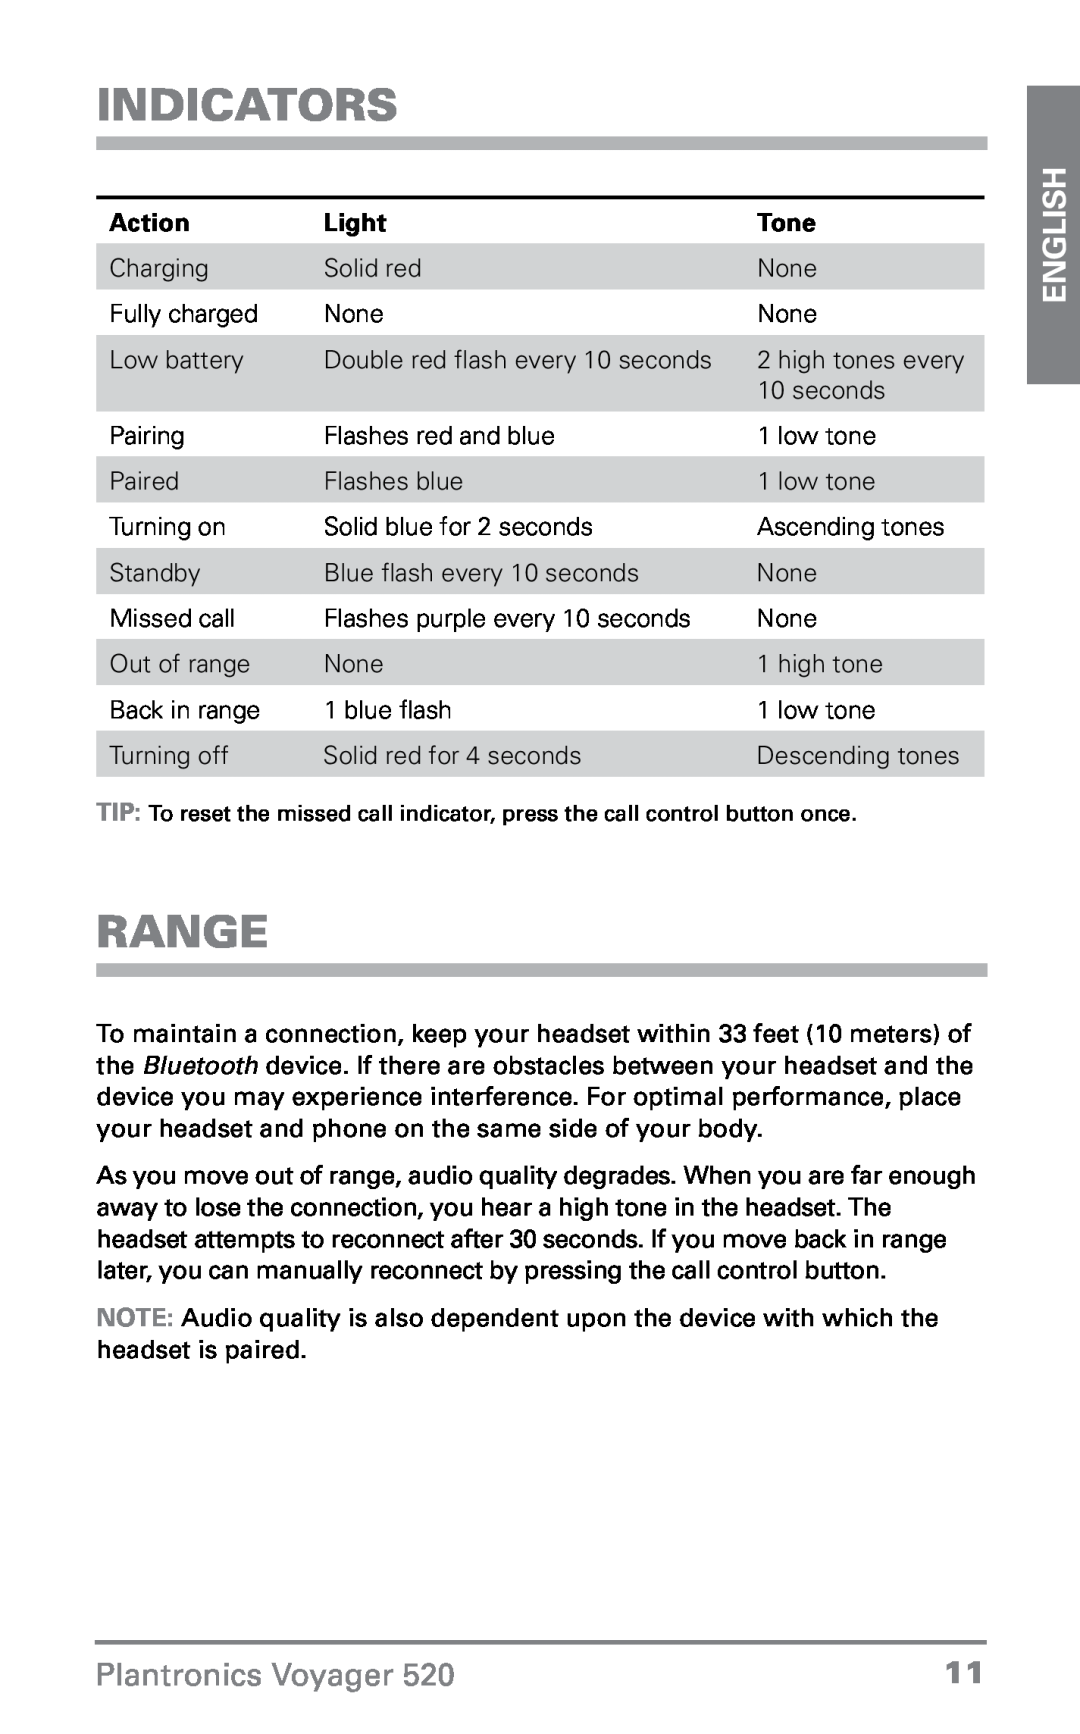 Plantronics 520 manual Indicators, Range, Light, Tone, English, Plantronics Voyager, Action 